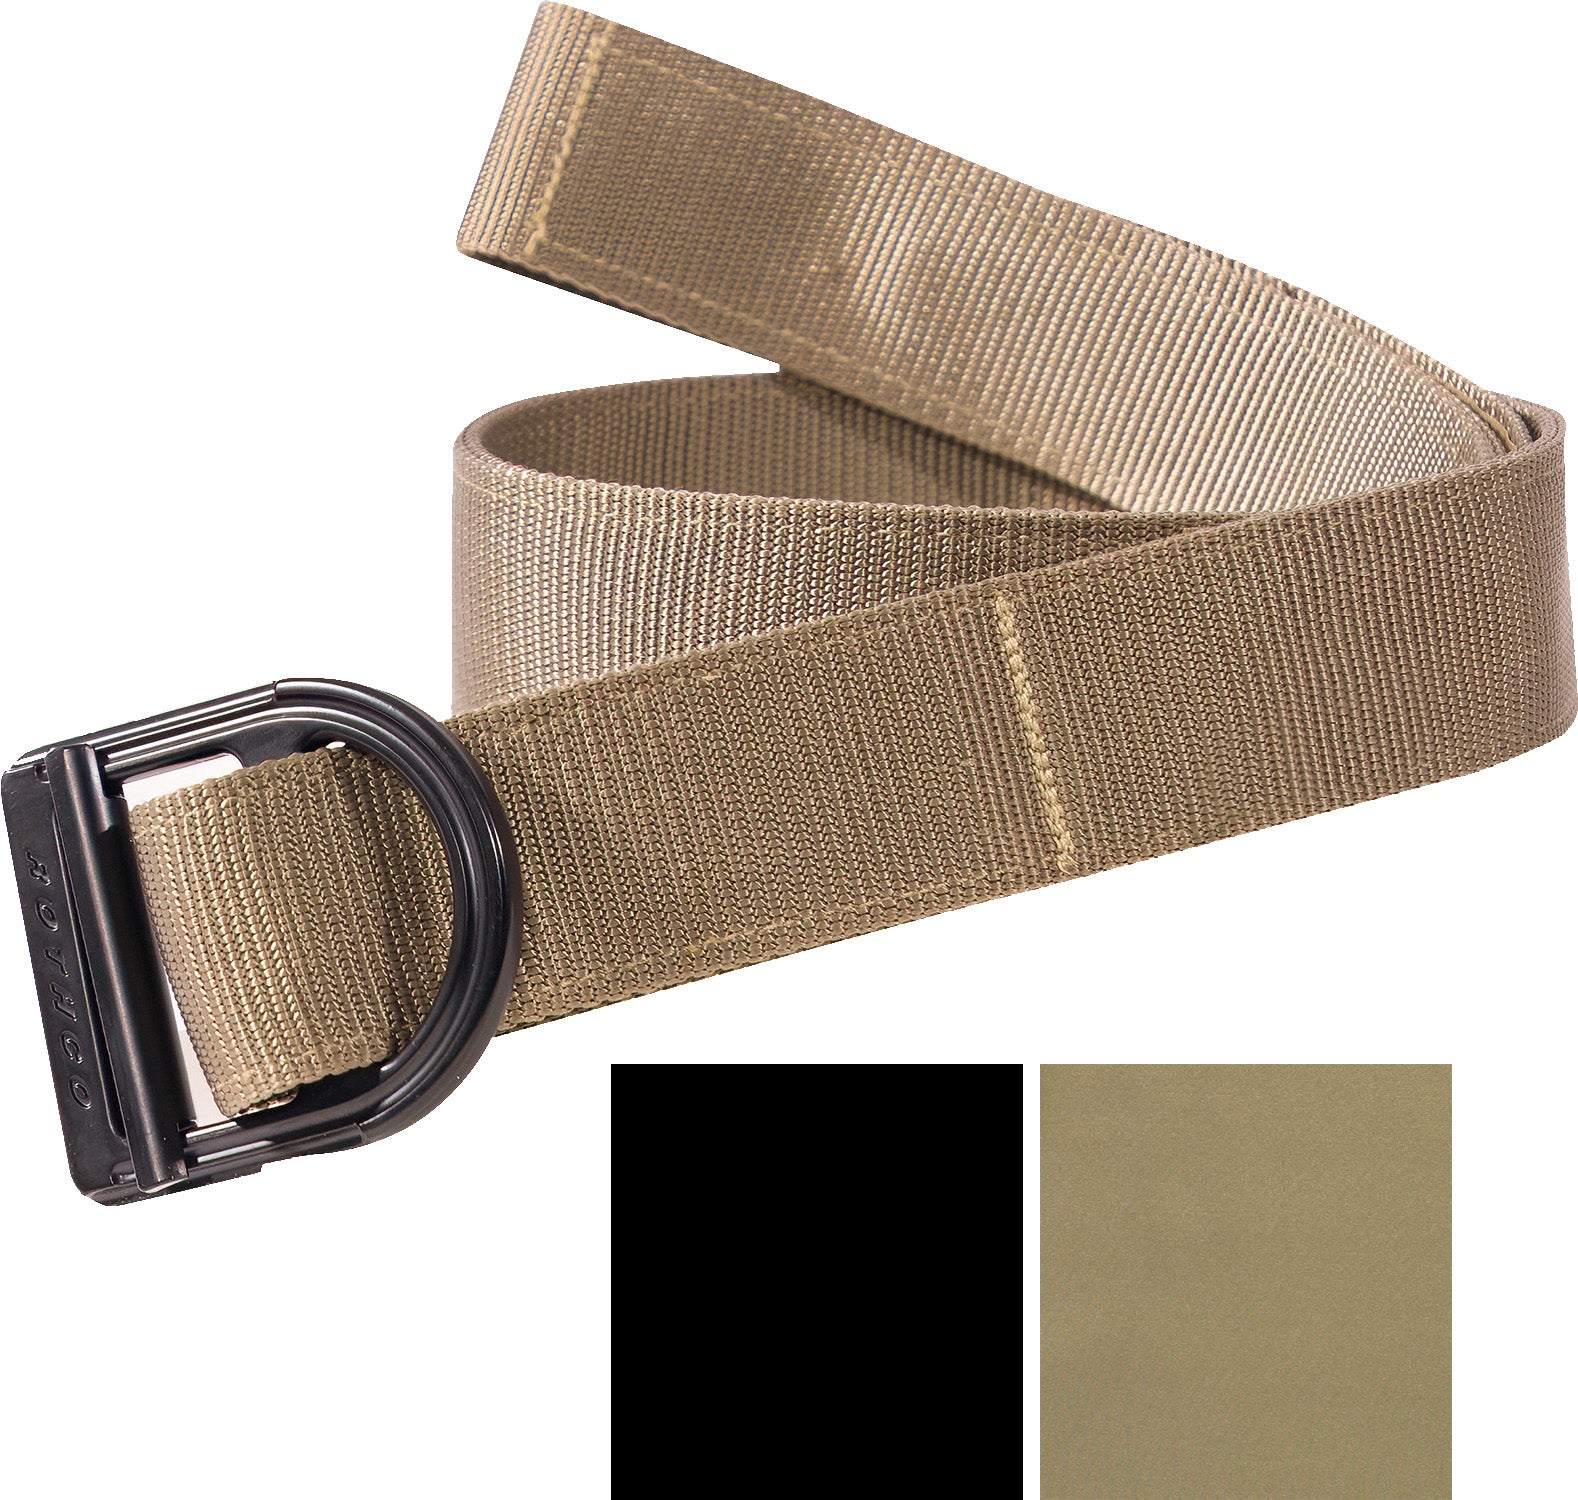 Tactical Belt Military Style Webbing Riggers Web Belt Heavy-Duty  Quick-Release Metal Buckle Belt for Men Women